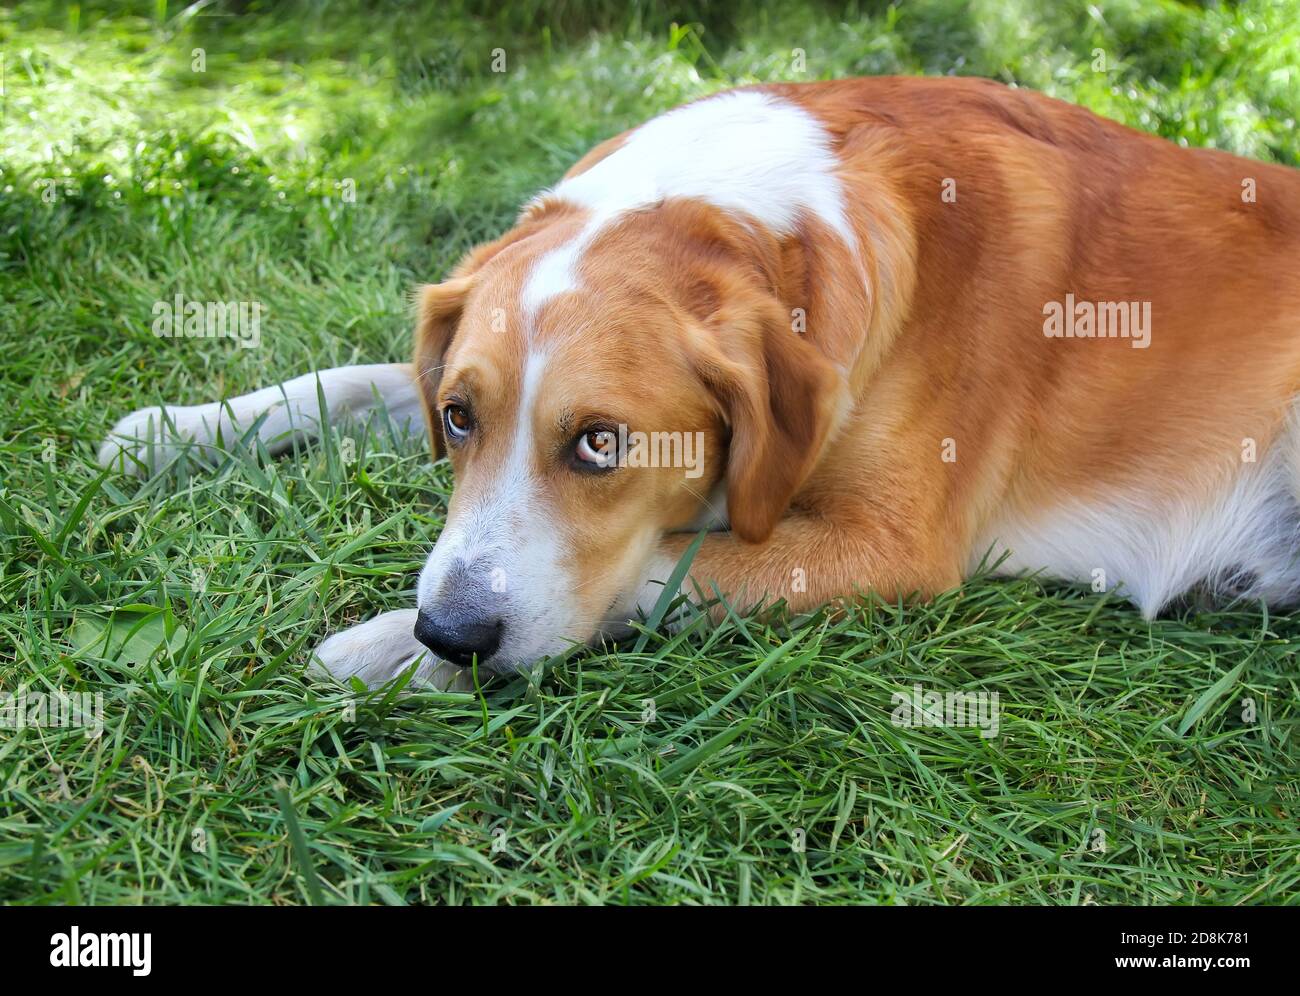 Portrait d'adorable chien domestique avec des yeux tristes sur la pelouse verte à l'extérieur, regardant l'appareil photo. Banque D'Images